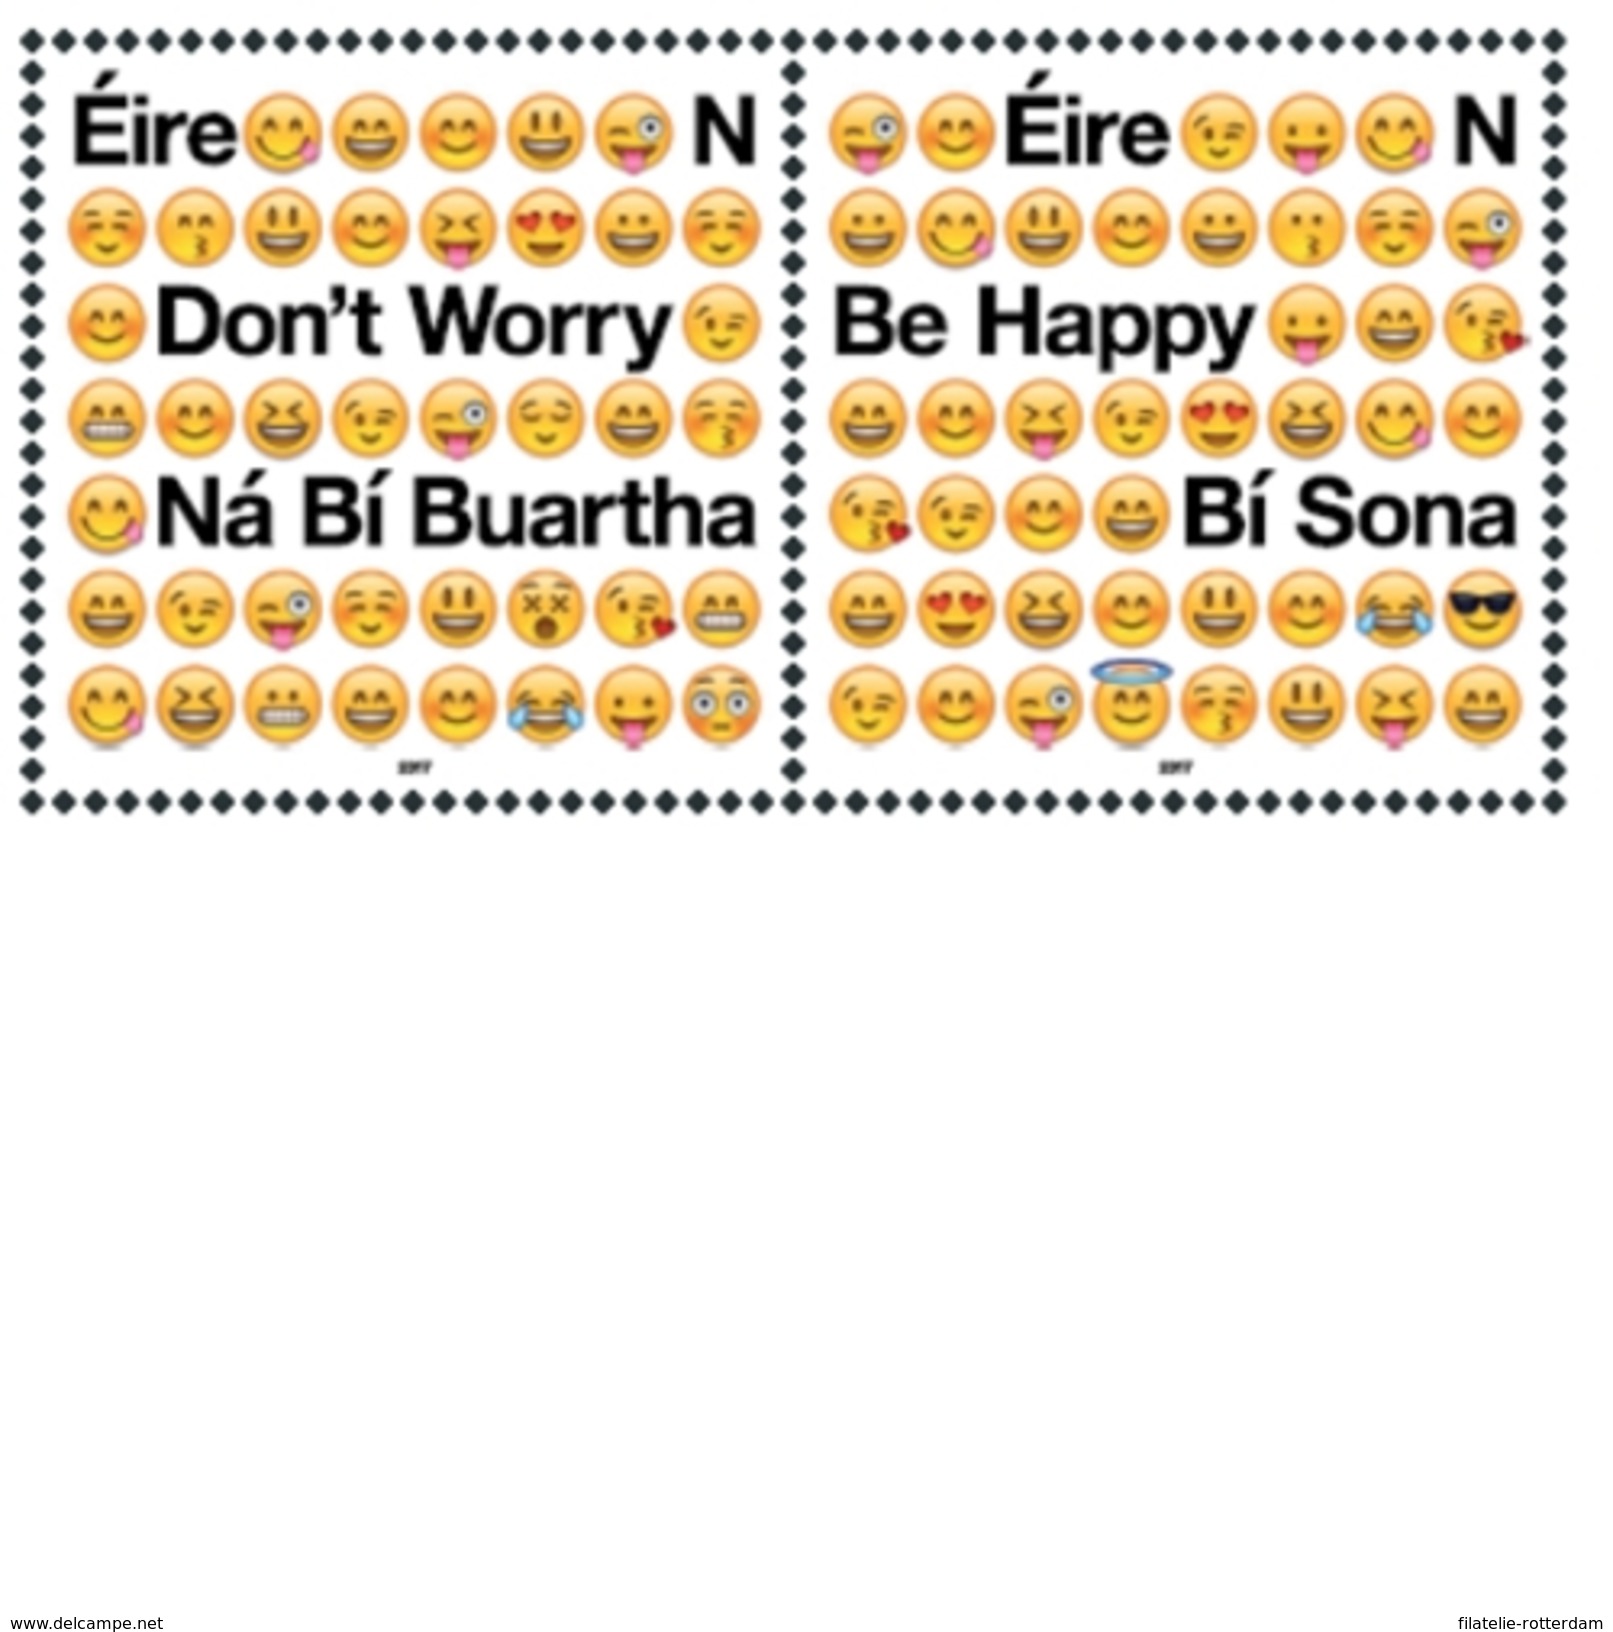 Ierland / Ireland - Postfris / MNH - Complete Set Emoji's 2017 - Ungebraucht